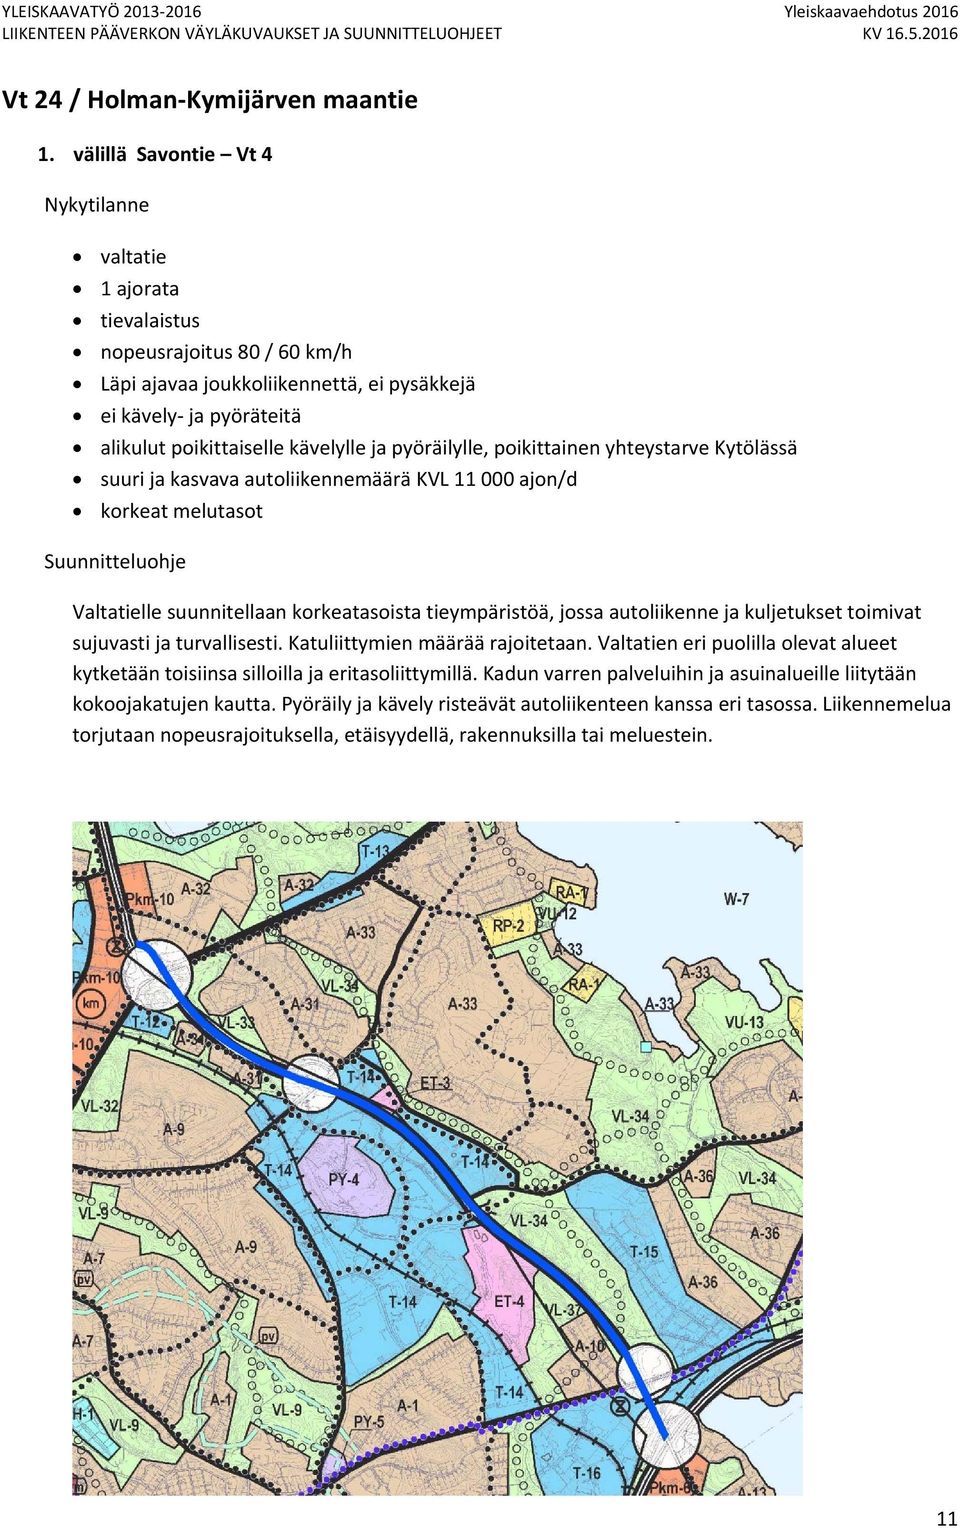 poikittainen yhteystarve Kytölässä suuri ja kasvava autoliikennemäärä KVL 11 000 ajon/d Valtatielle suunnitellaan korkeatasoista tieympäristöä, jossa autoliikenne ja kuljetukset toimivat sujuvasti ja